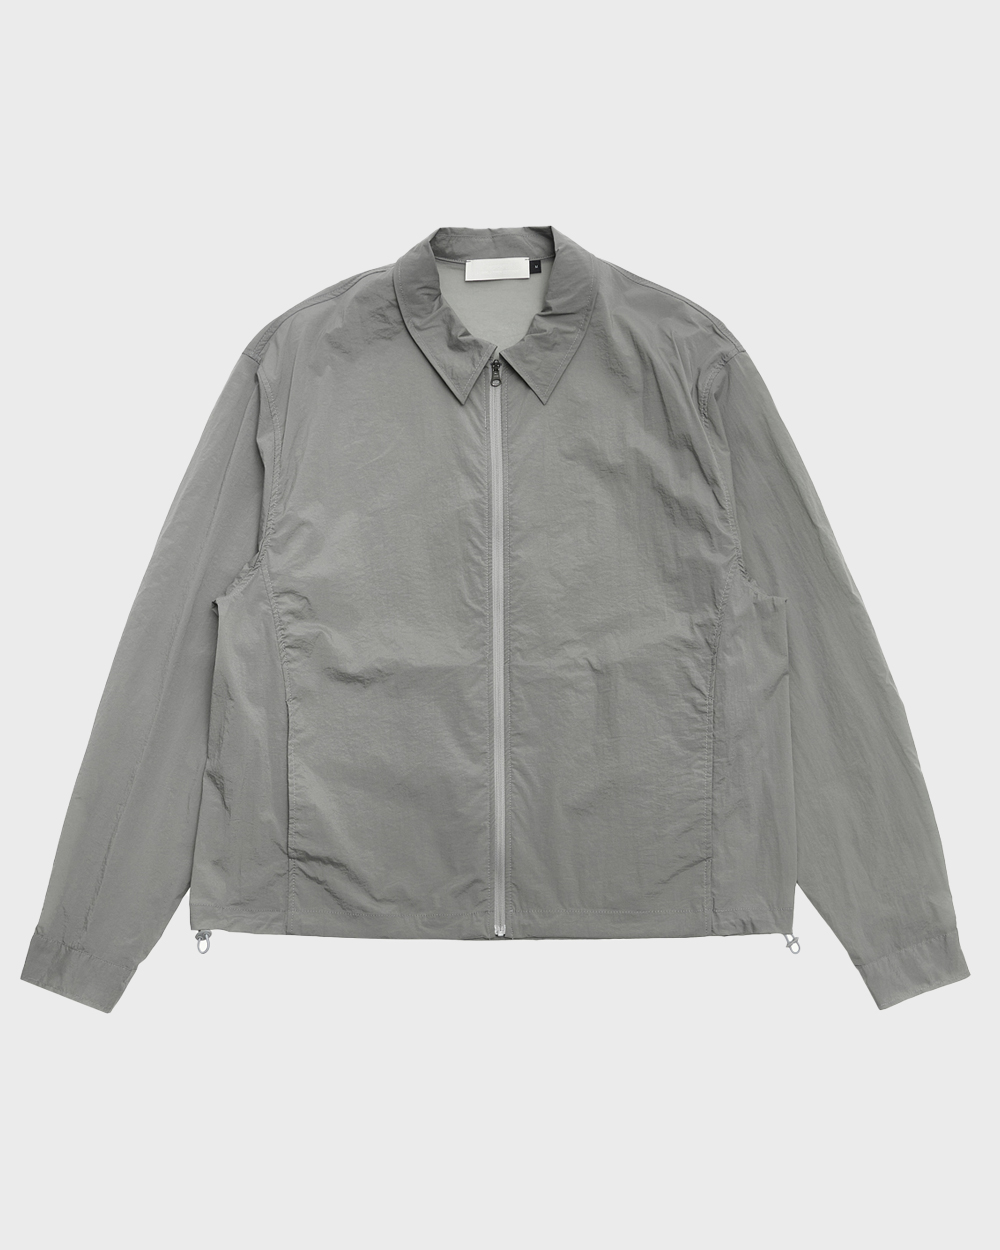 Sheer Zip Up Shirts (Grey)